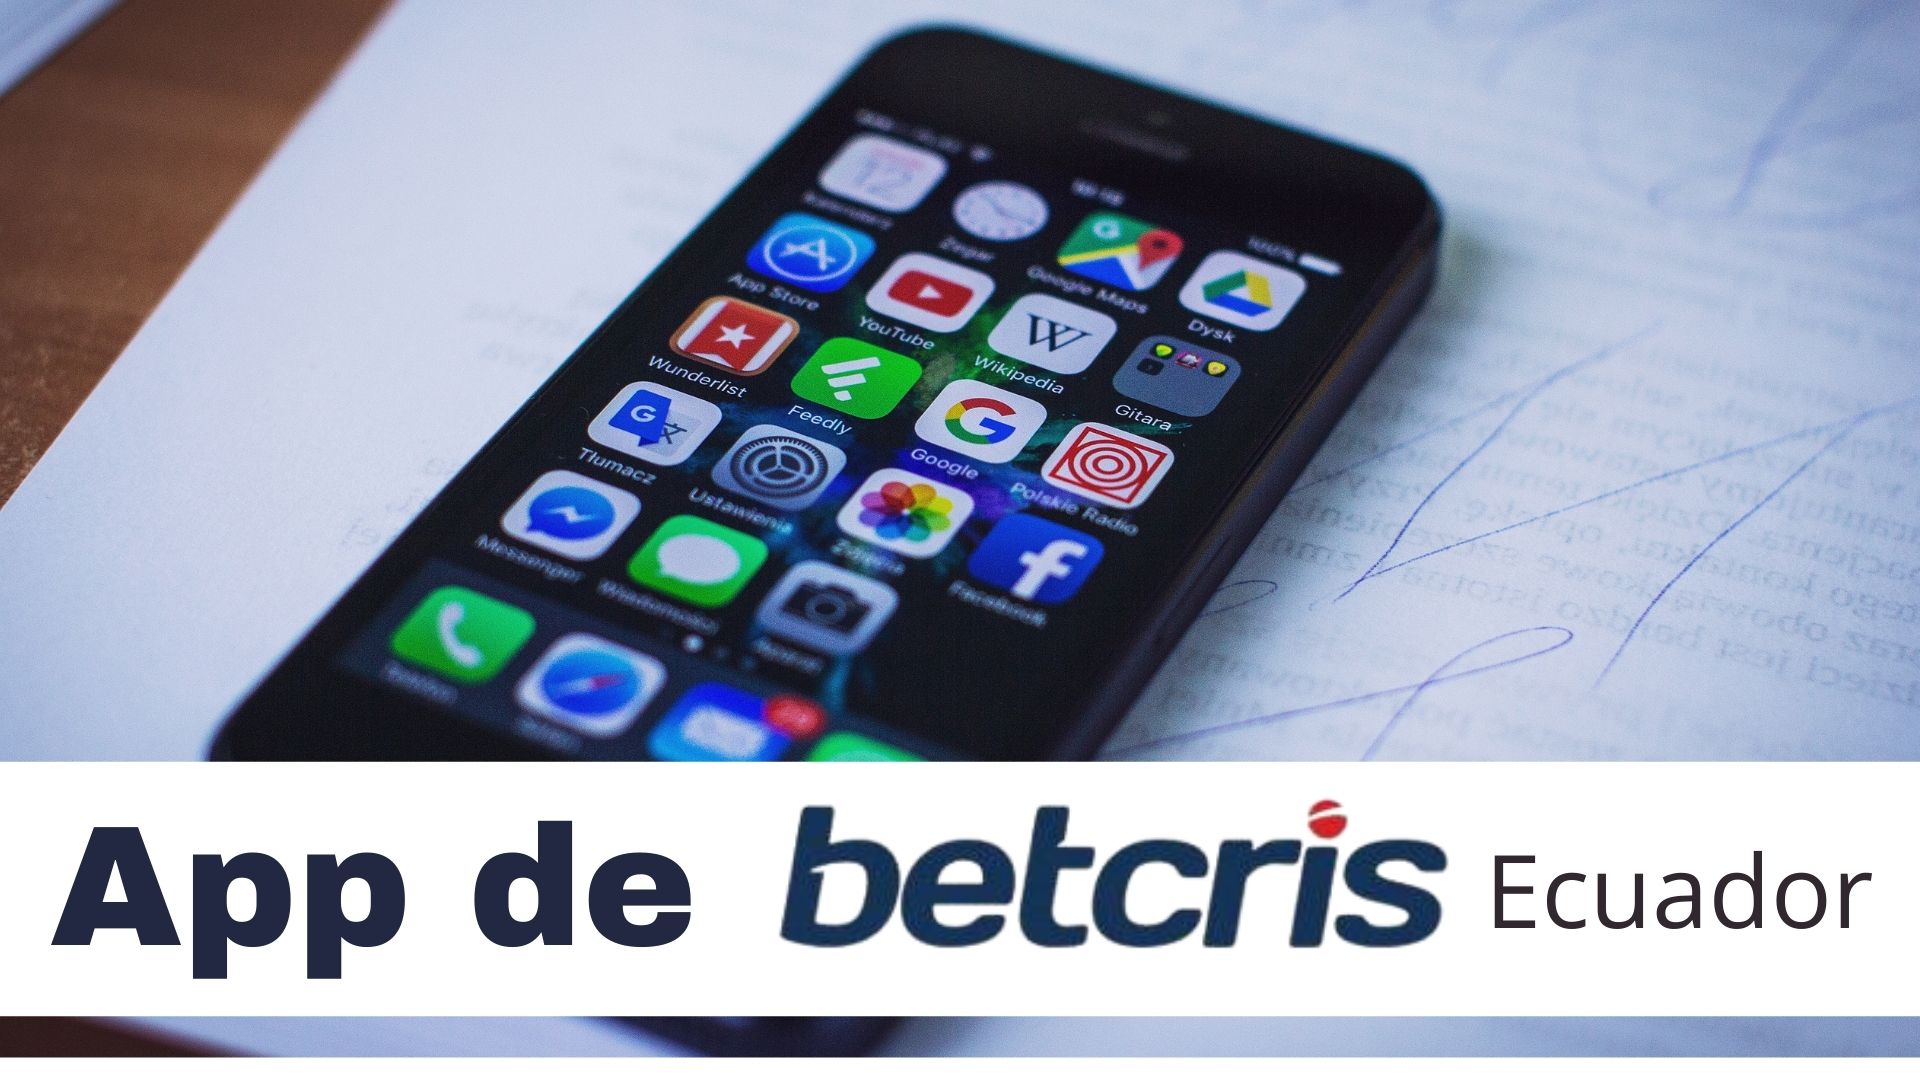 App de Betcris Ecuador